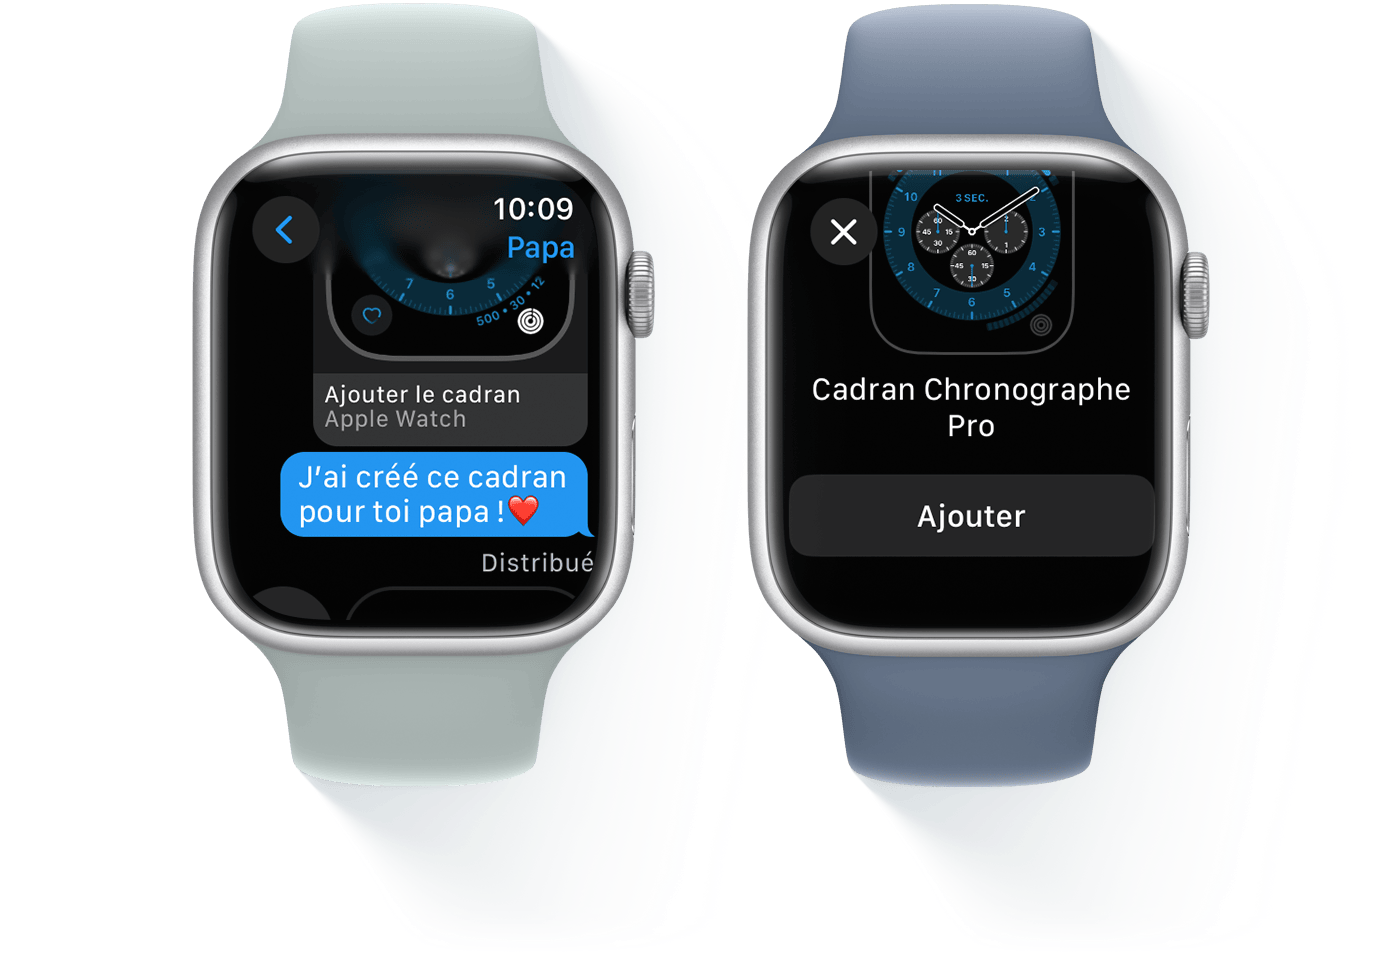 Deux Apple Watch affichant une conversation par SMS et le cadran Chronographe Pro, respectivement